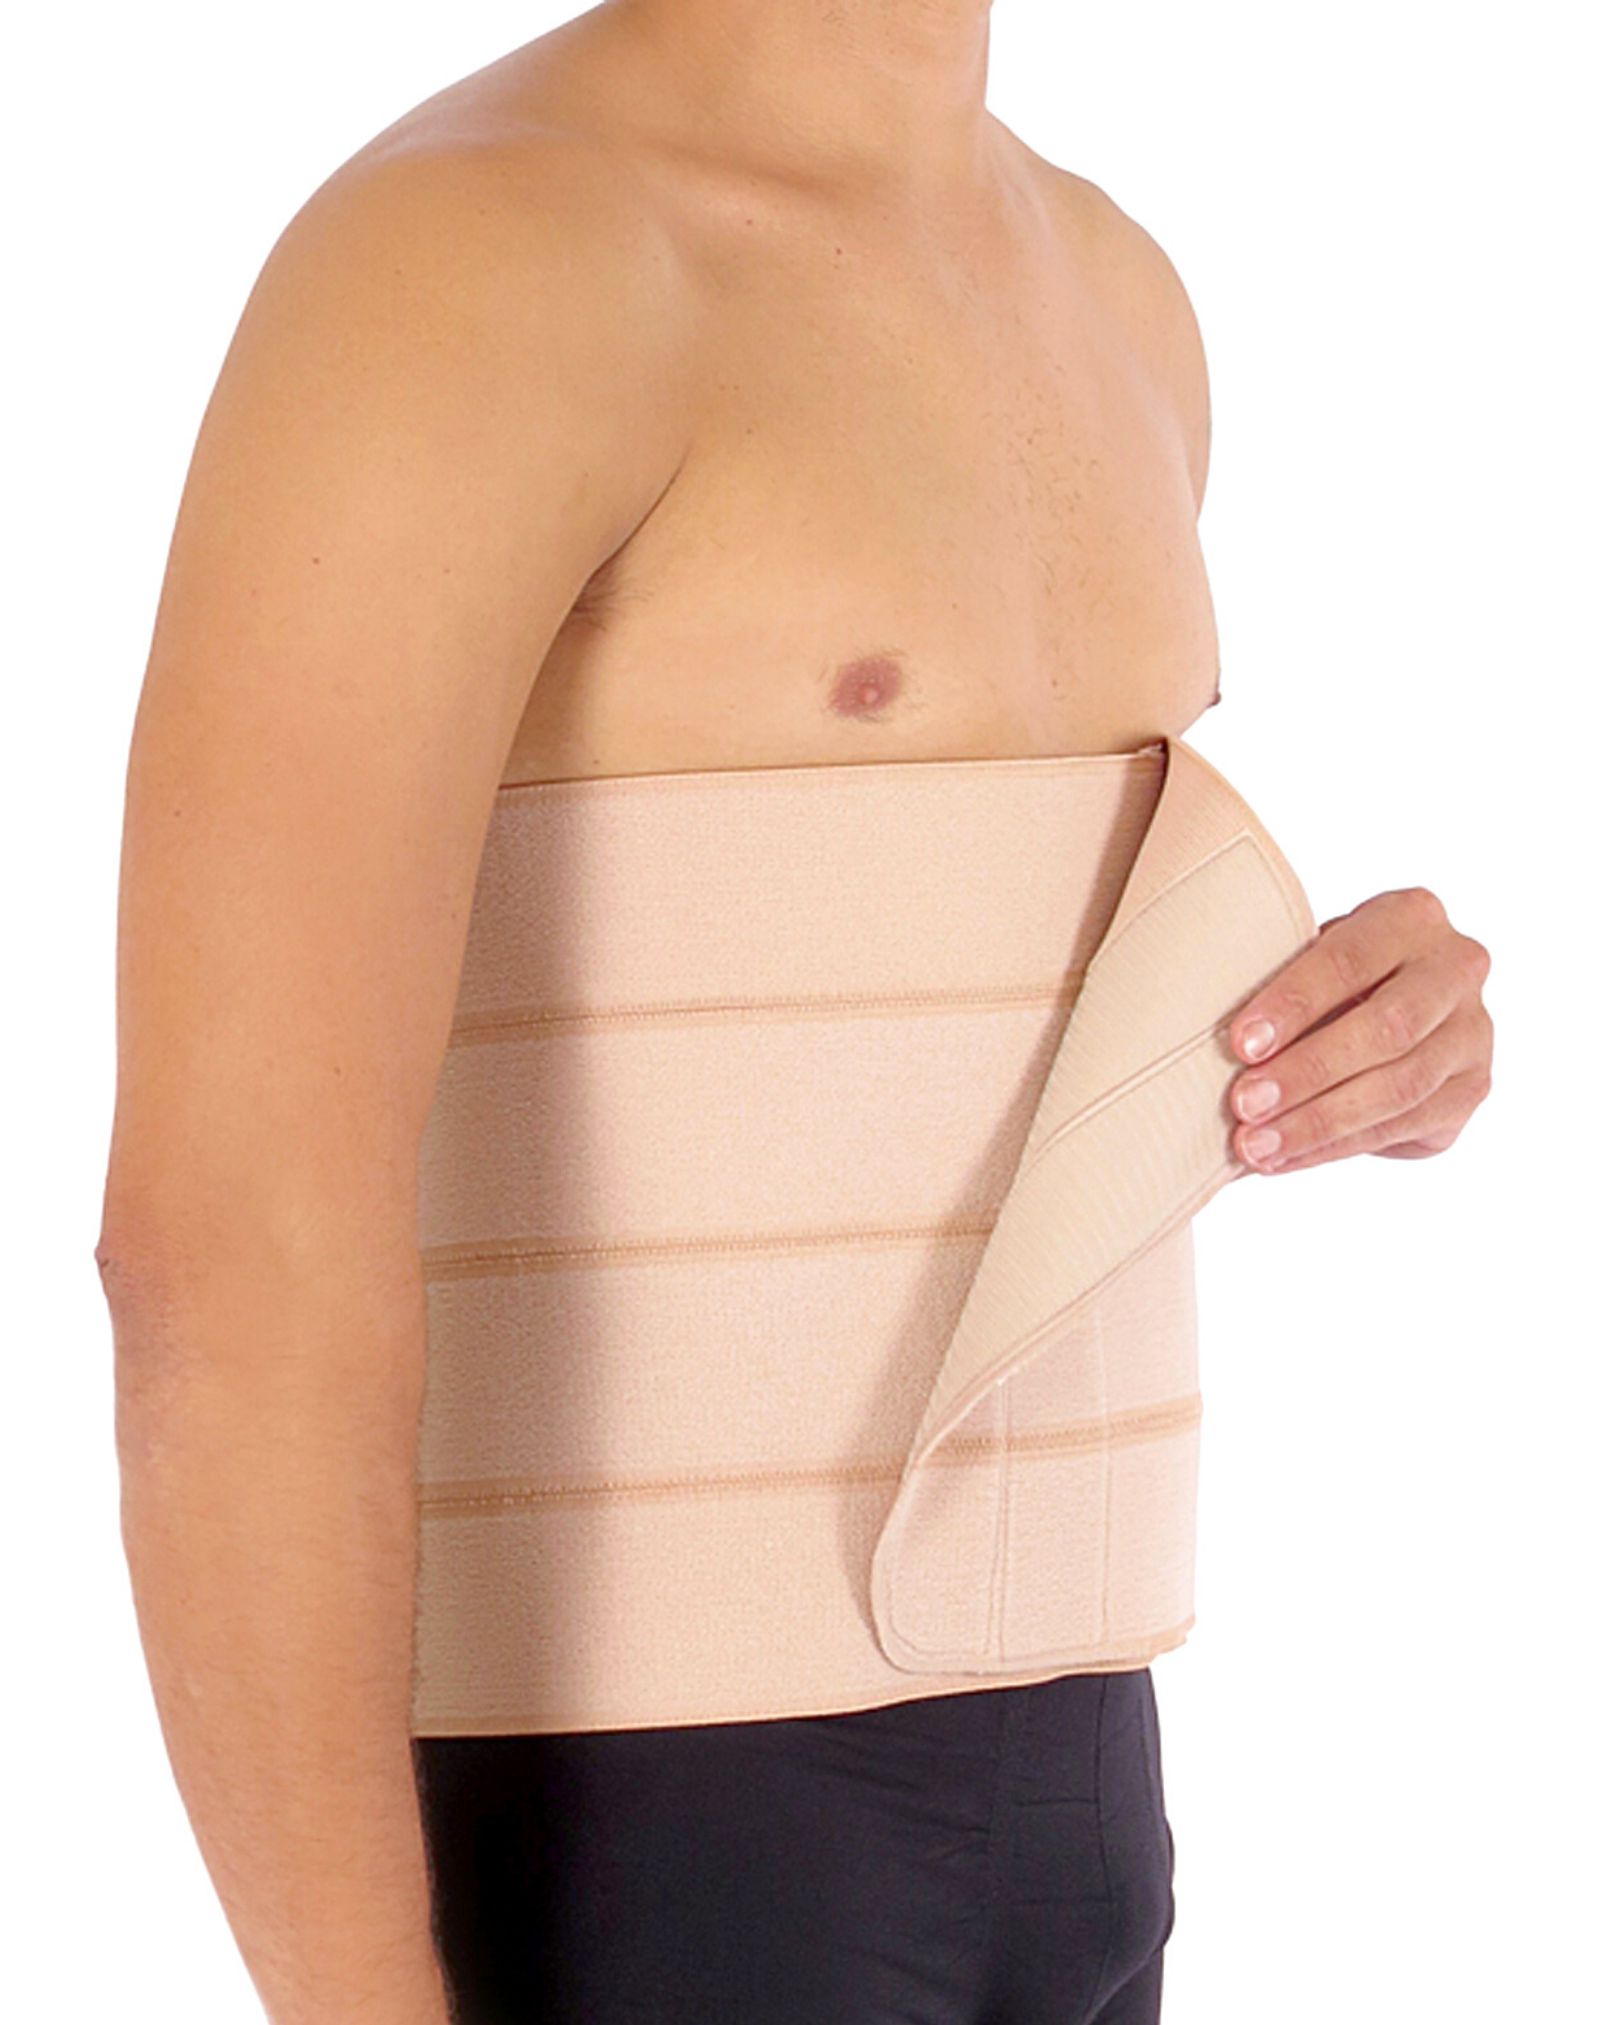 Faixa elástica abdominal, com velcro (3, 4 ou 5 gomos) - Cintas Modeladoras  Corpo Pele - Pós parto, Cirúrgica , Estética